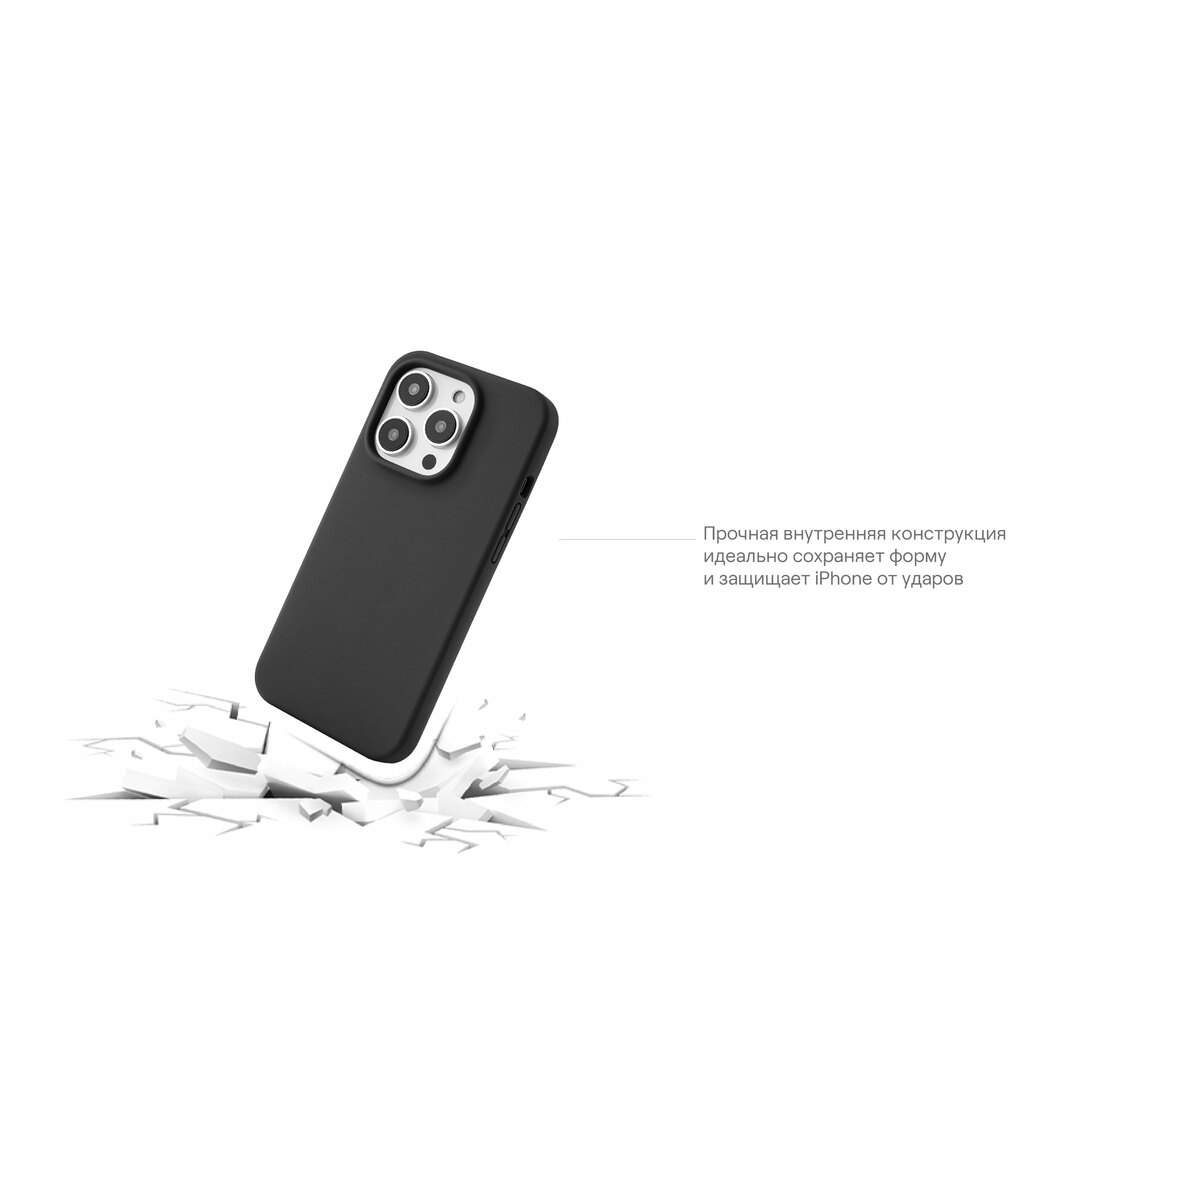 Чехол-накладка uBear Touch Case для смартфона Apple iPhone 14, черный